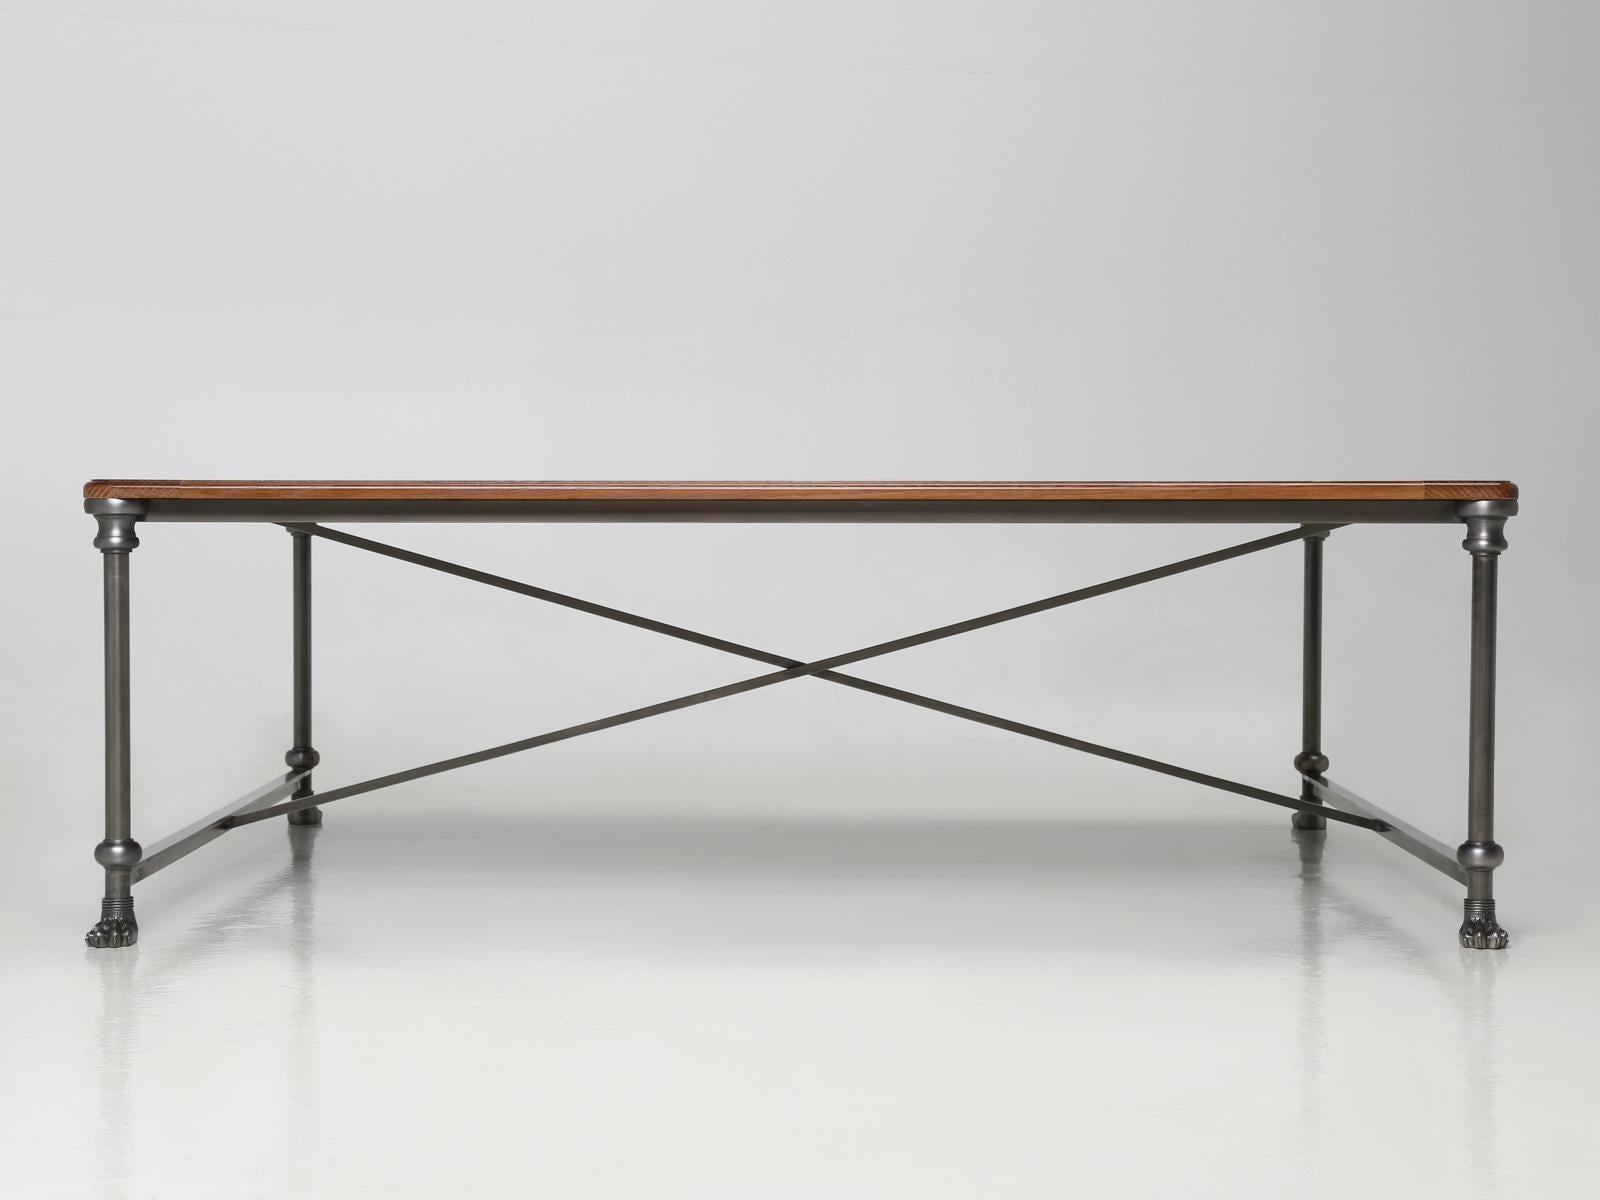 Industriel Table basse d'inspiration industrielle française en acier inoxydable de toutes les dimensions, finition en vente